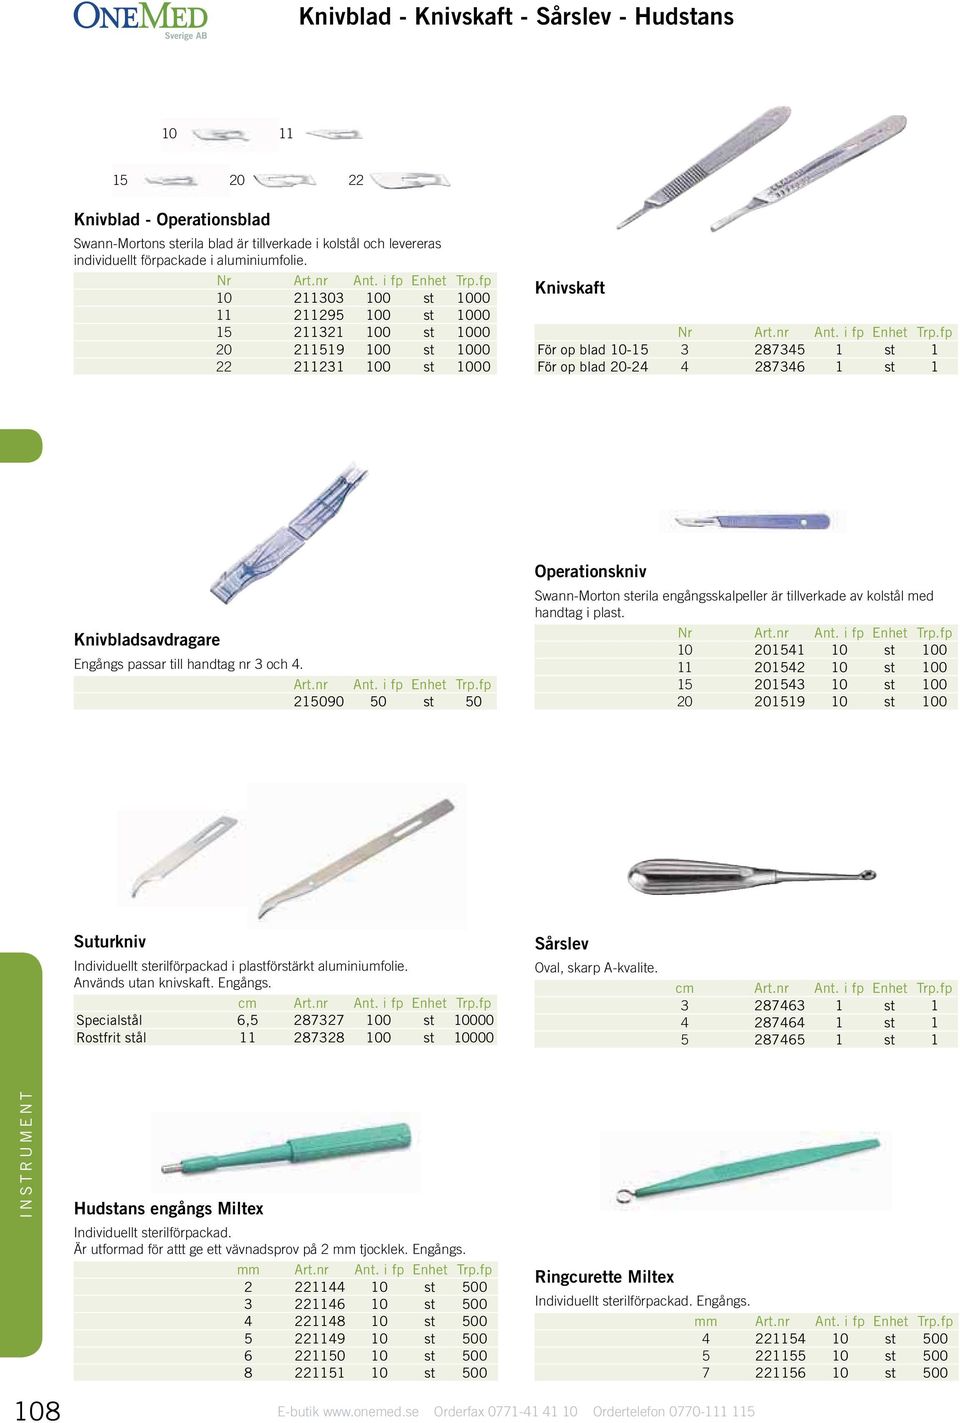 Knivbladsavdragare Engångs passar till handtag nr 3 och 4. 215090 50 st 50 Operationskniv Swann-Morton sterila engångsskalpeller är tillverkade av kolstål med handtag i plast.